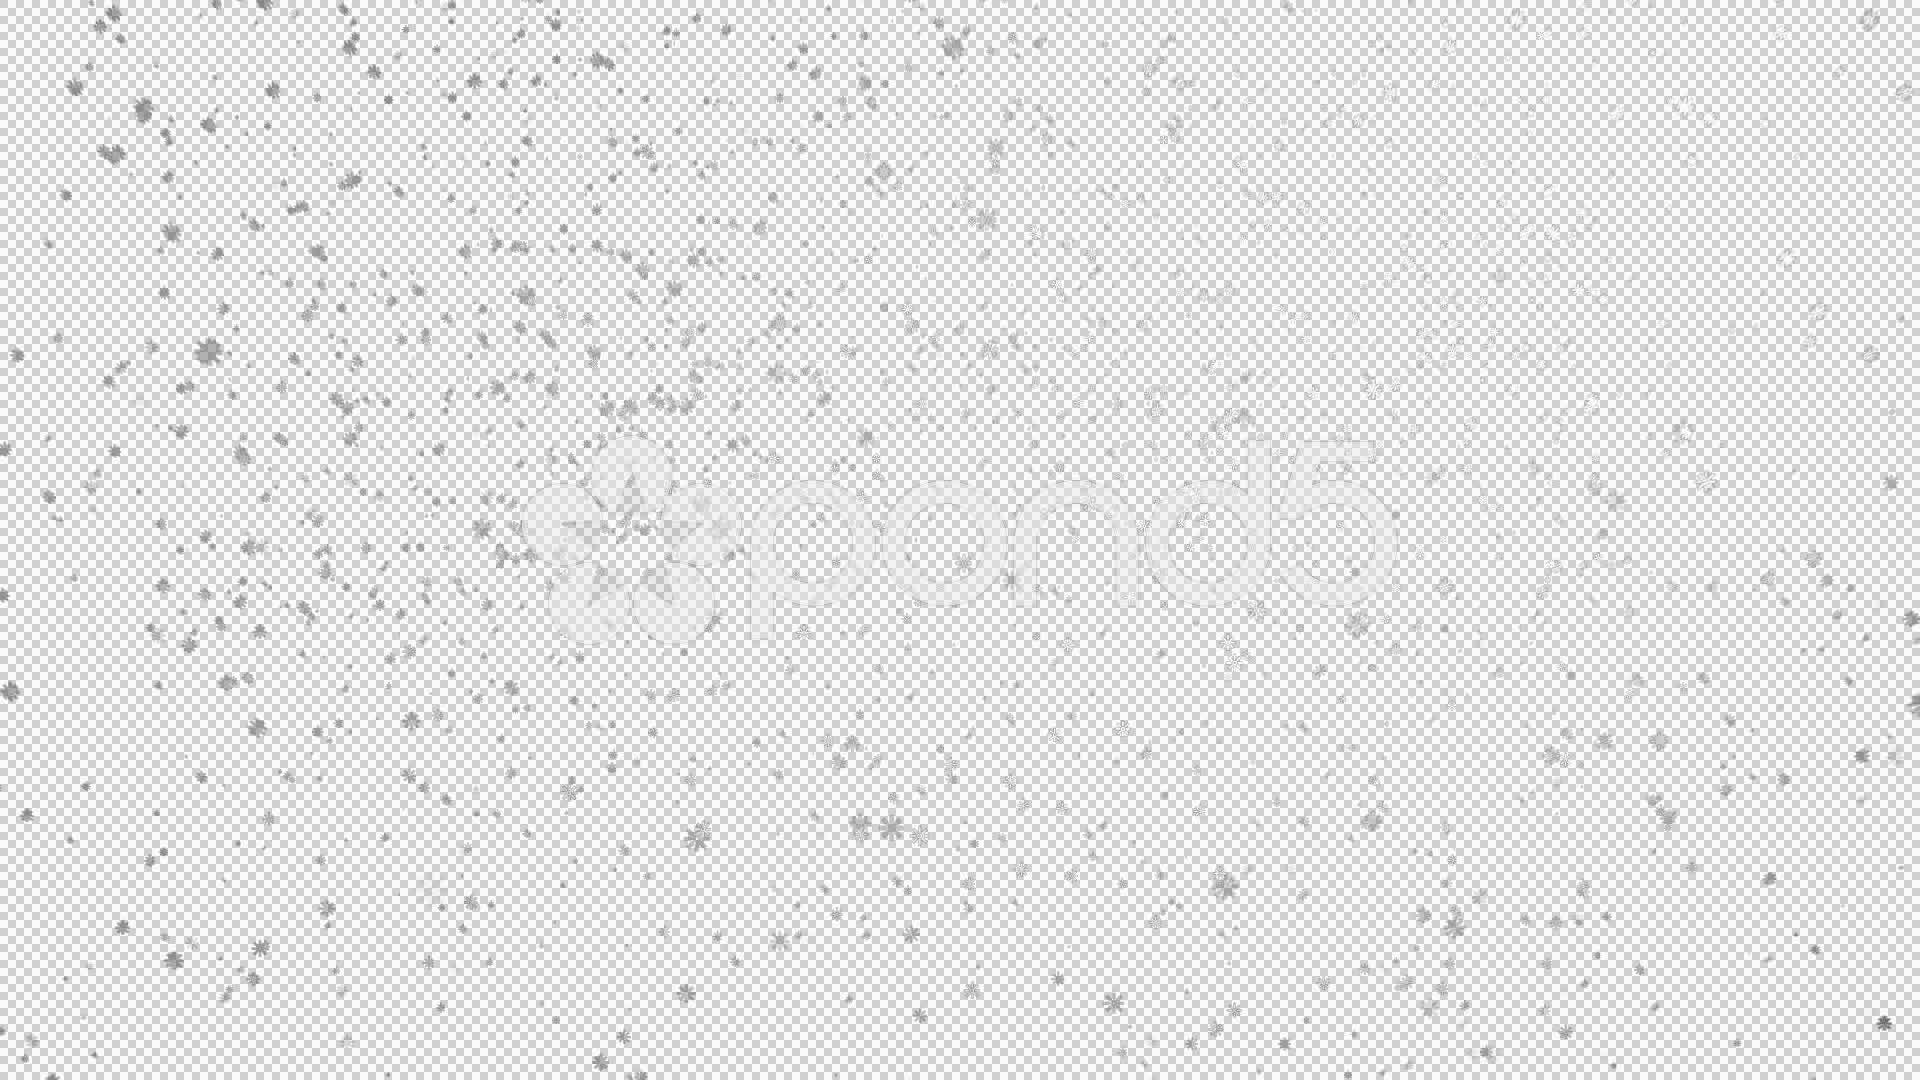 Snowfall PNG High-Quality Image